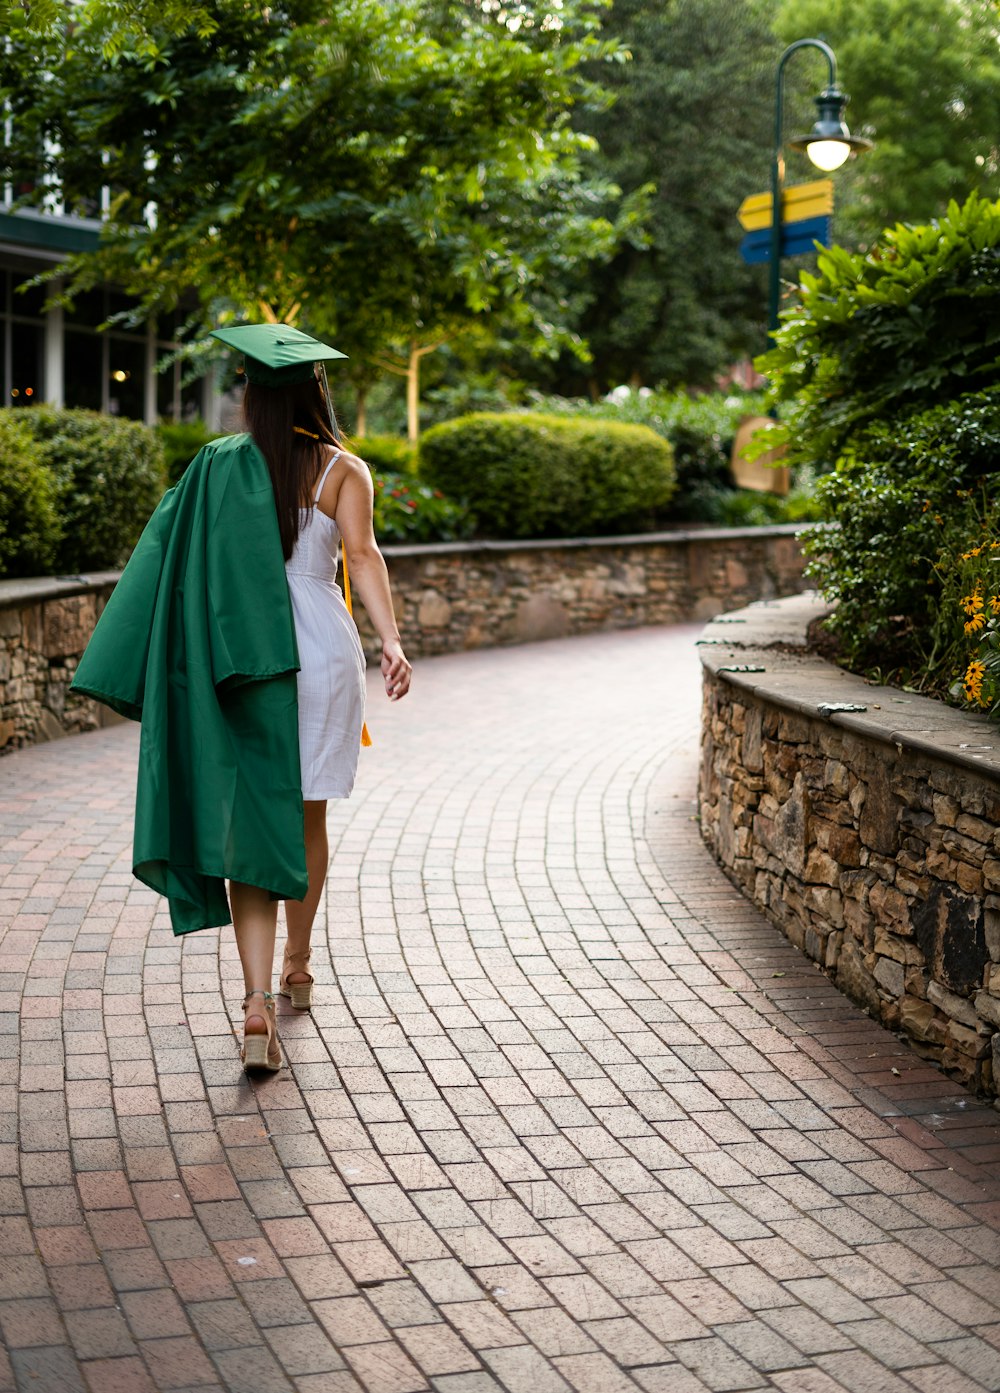 Persona desconocida con vestido académico caminando al aire libre